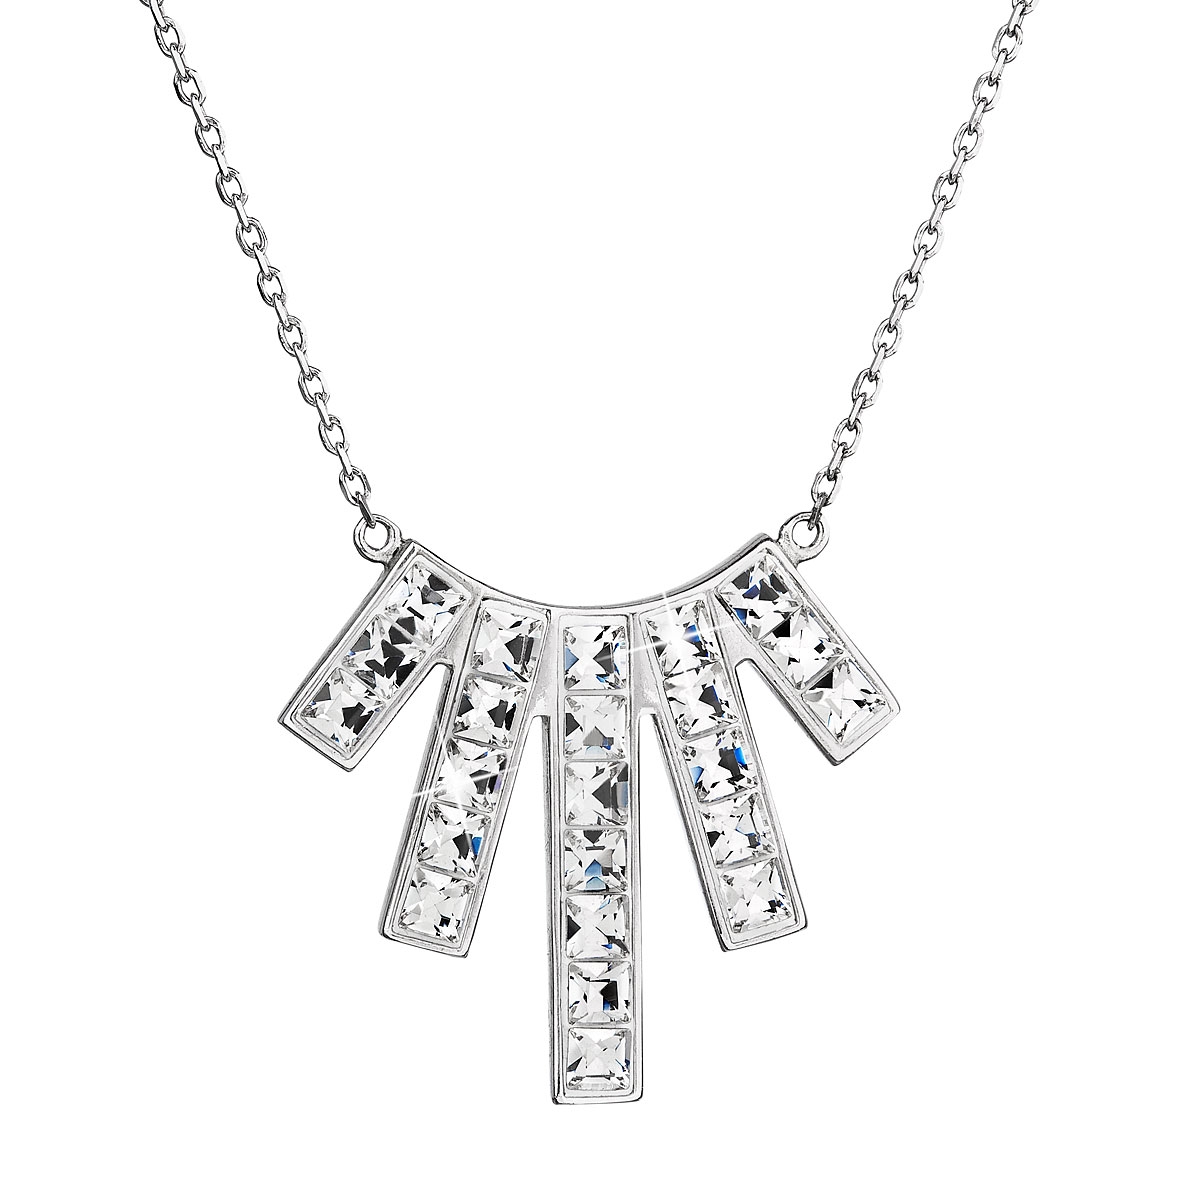 Strieborný náhrdelník s kryštálmi Crystals from Swarovski ® Crystal